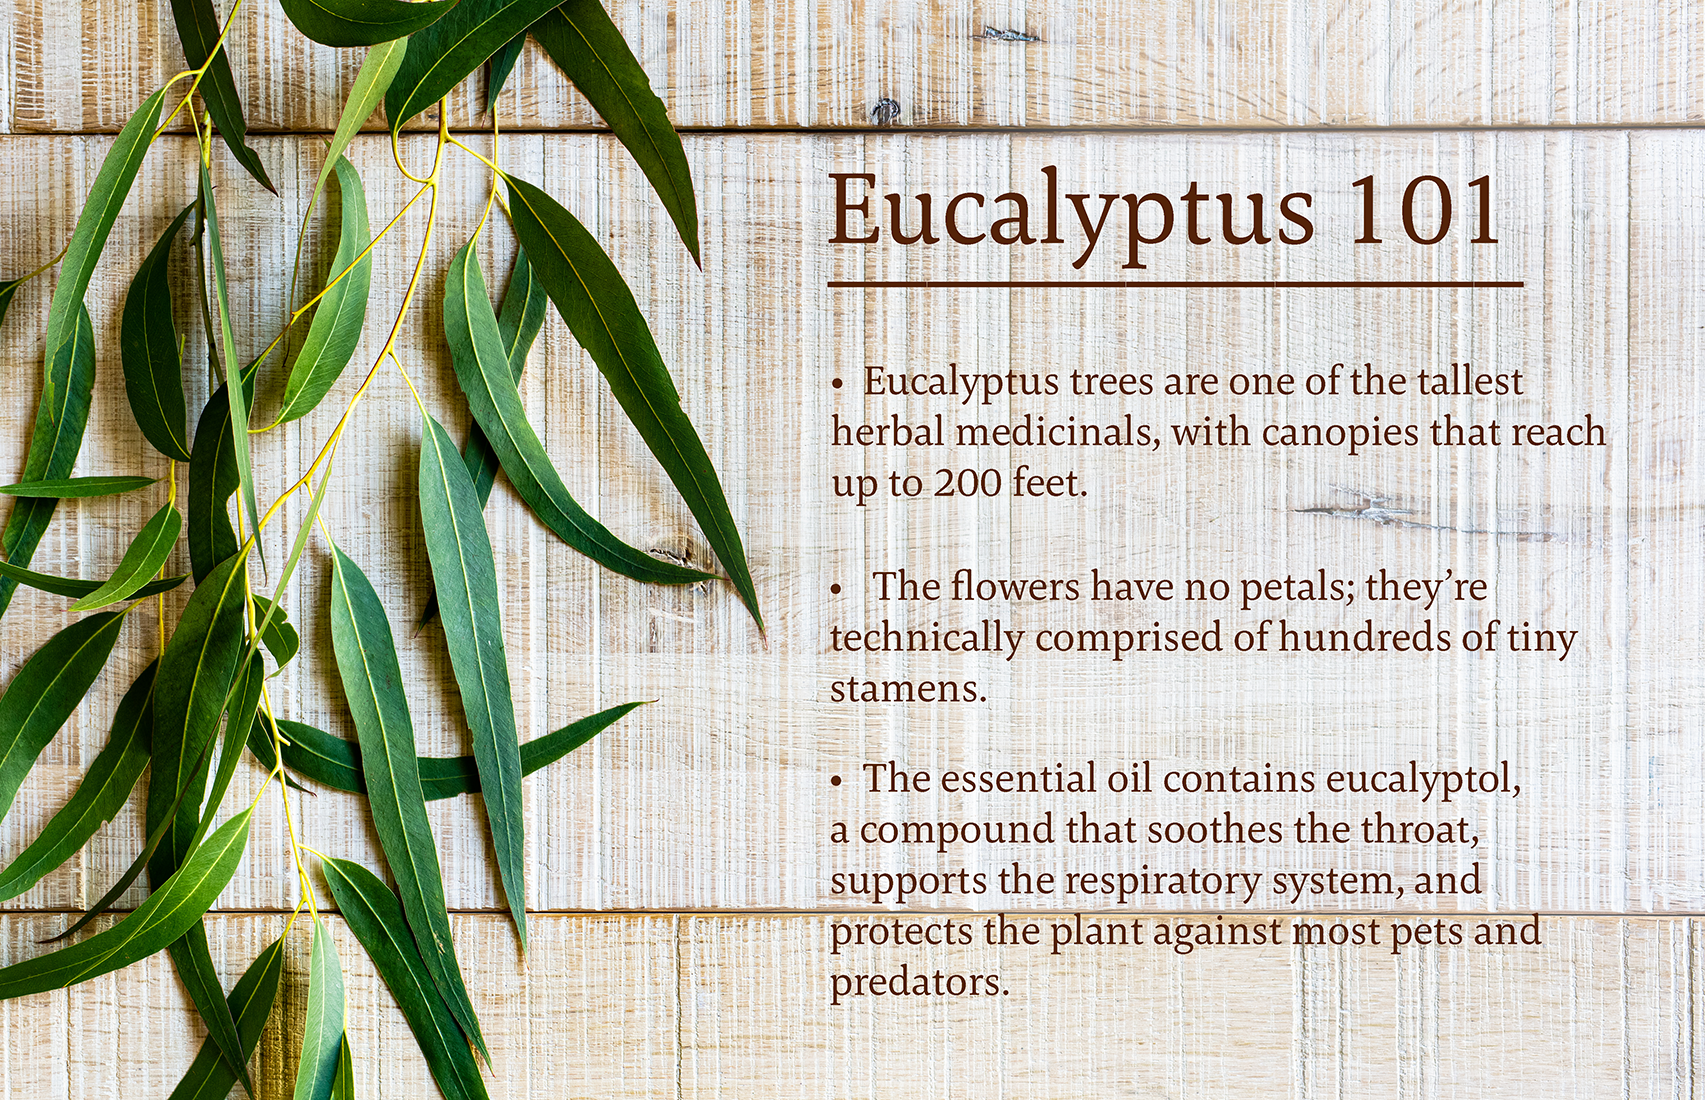 Eucalyptus 101 infographic